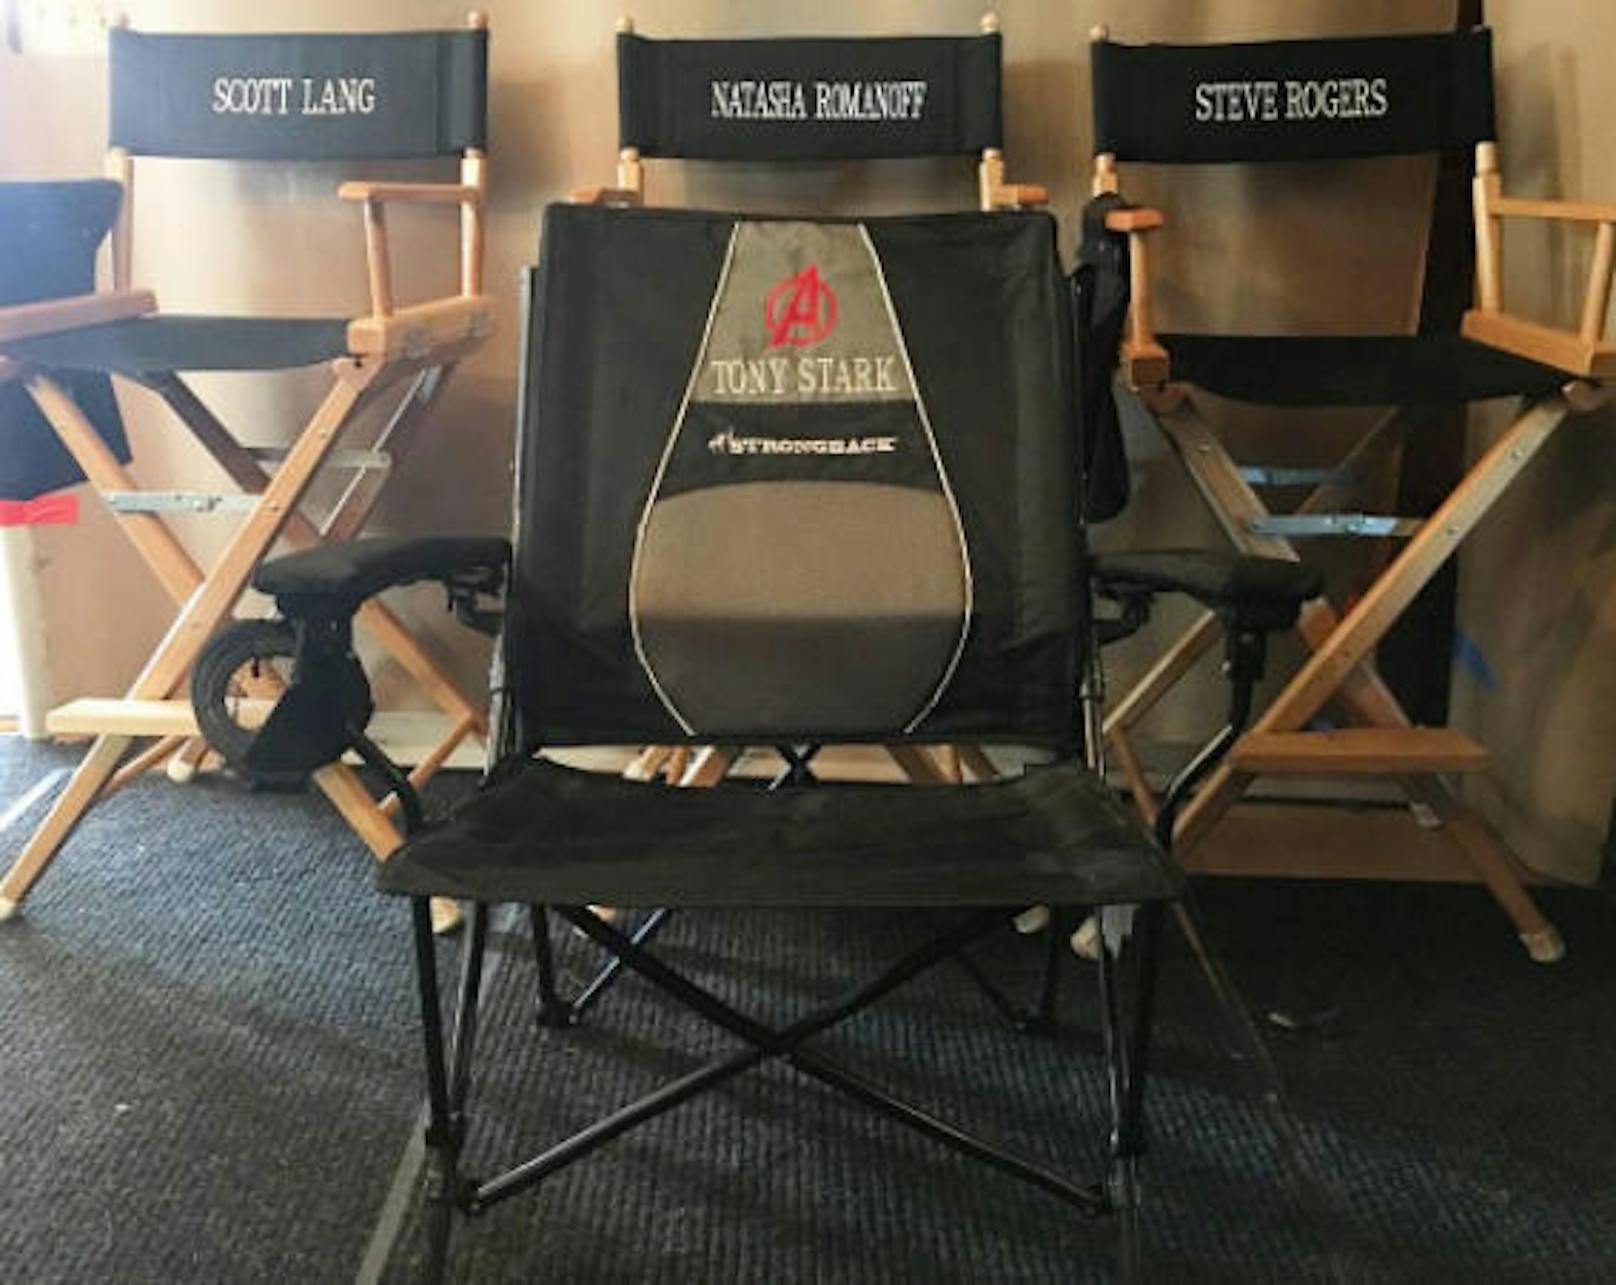 28.10.2017: Robert Downey Jr. hat seinen Fans auf Instagram verraten, wer neben ihm im vierten Teil der "Avengers"-Reihe zu sehen sein wird. Das Bild, das er postete, spoilert einen Teil des Casts und beendet Spekulationen über ein Ableben von "Iron Man" im dritten Teil.